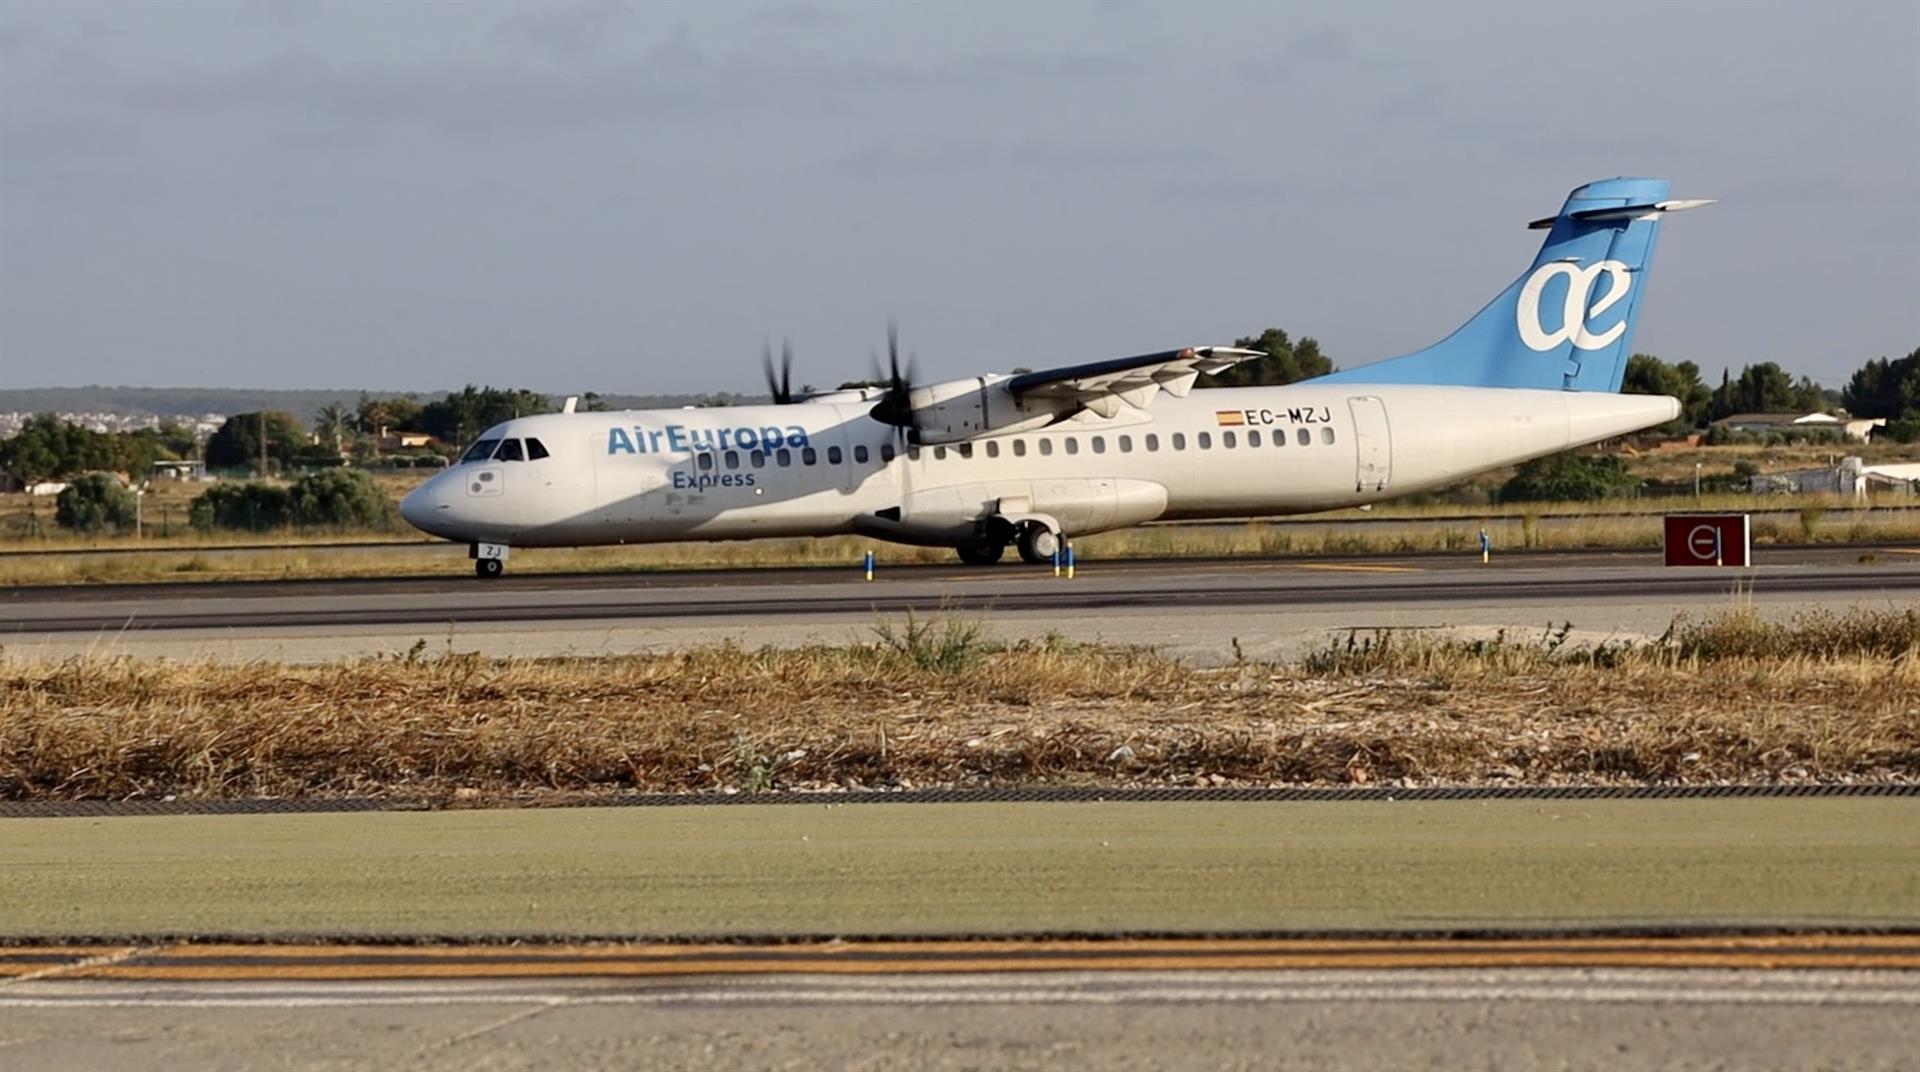 Durante más de una década, la flota ATR ha operado más de 135.000 vuelos y transportado casi seis millones de pasajeros. - AIR EUROPA